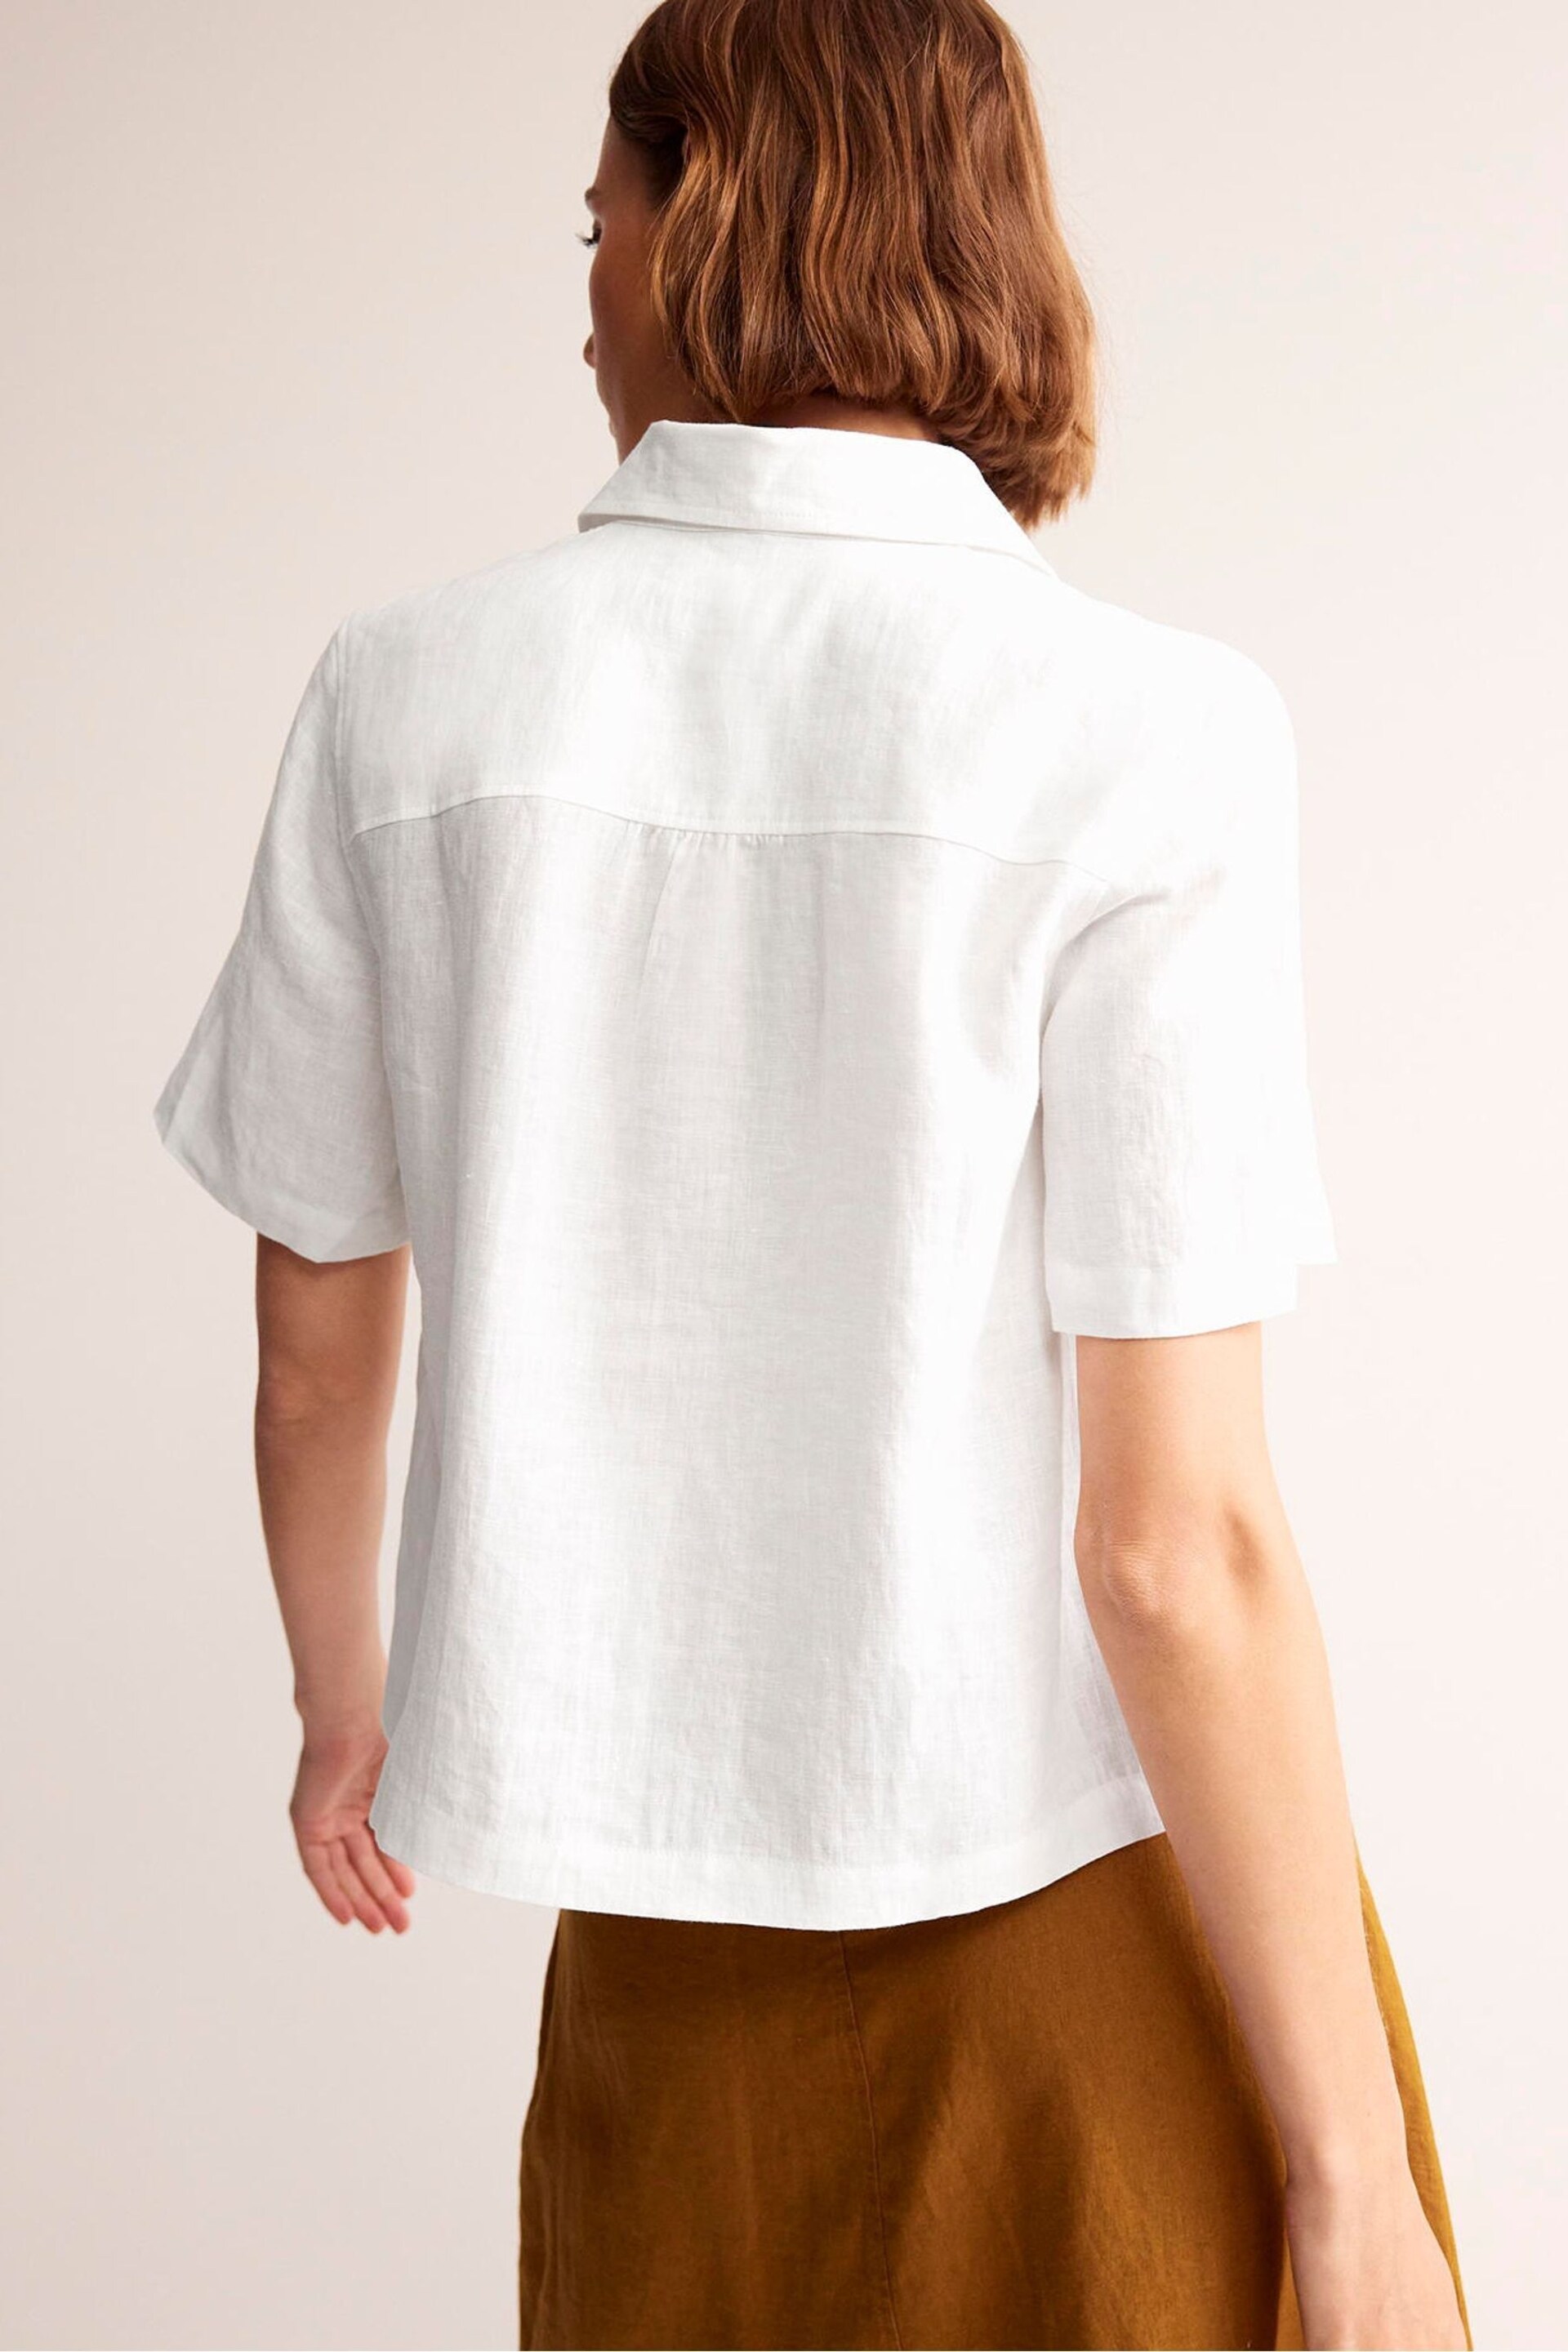 Boden White Hazel Short Sleeve Linen Shirt - Image 4 of 5